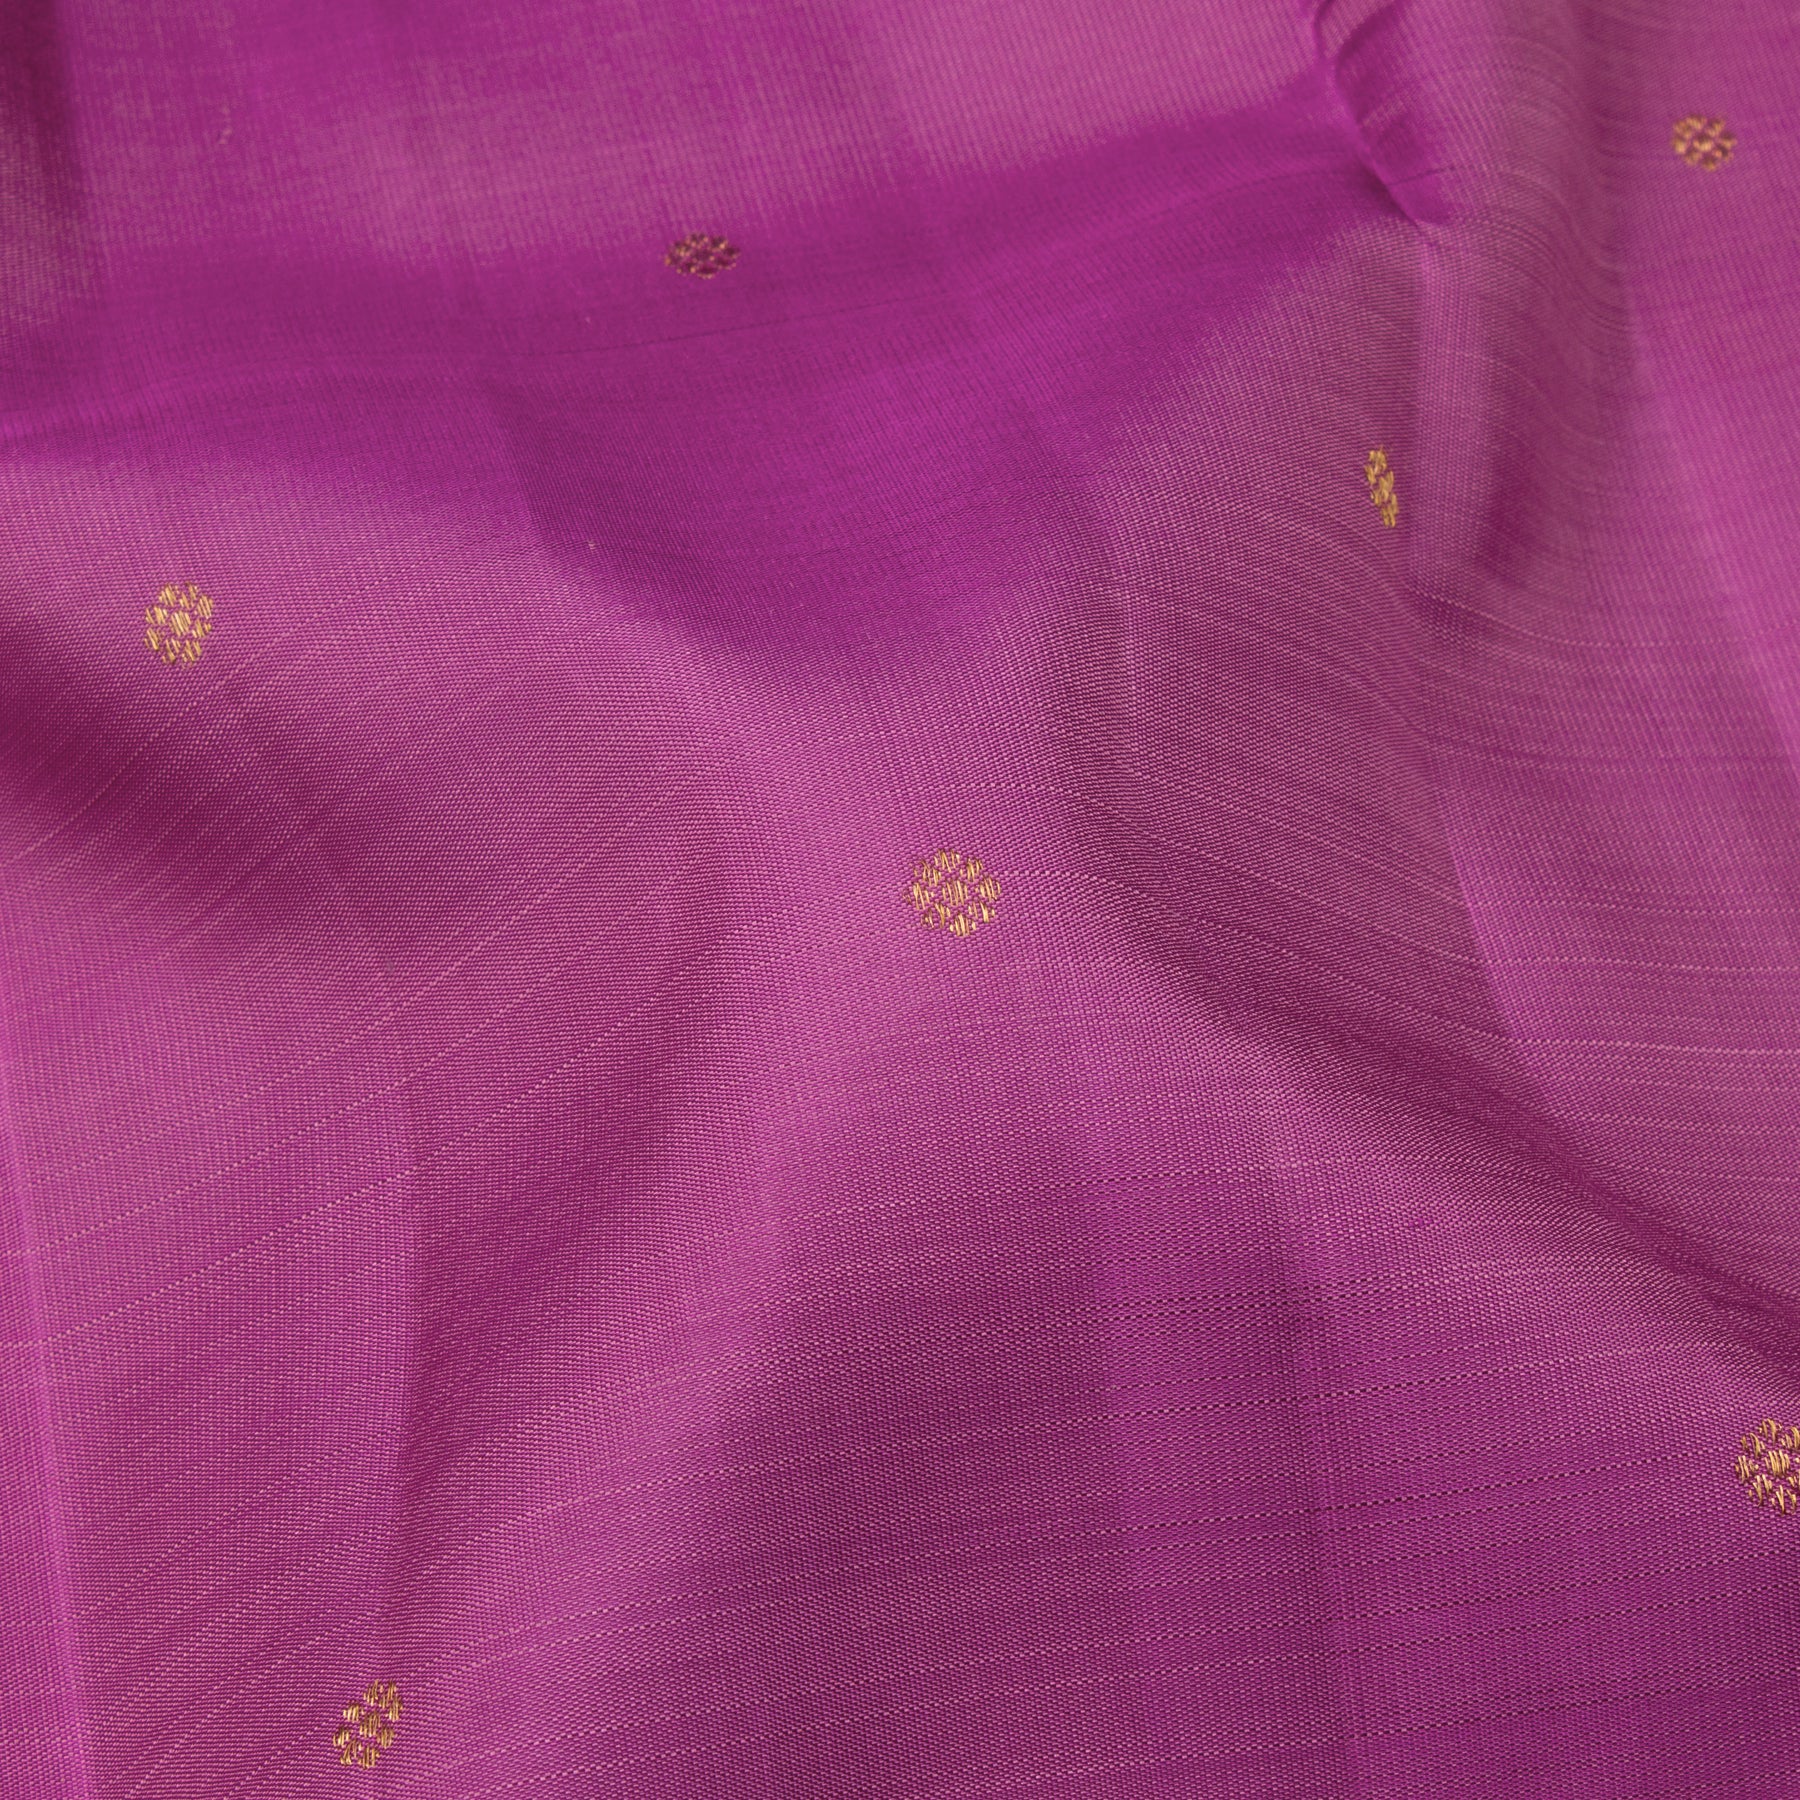 Kanakavalli Kanjivaram Silk Sari 23-611-HS001-14042 - Fabric View